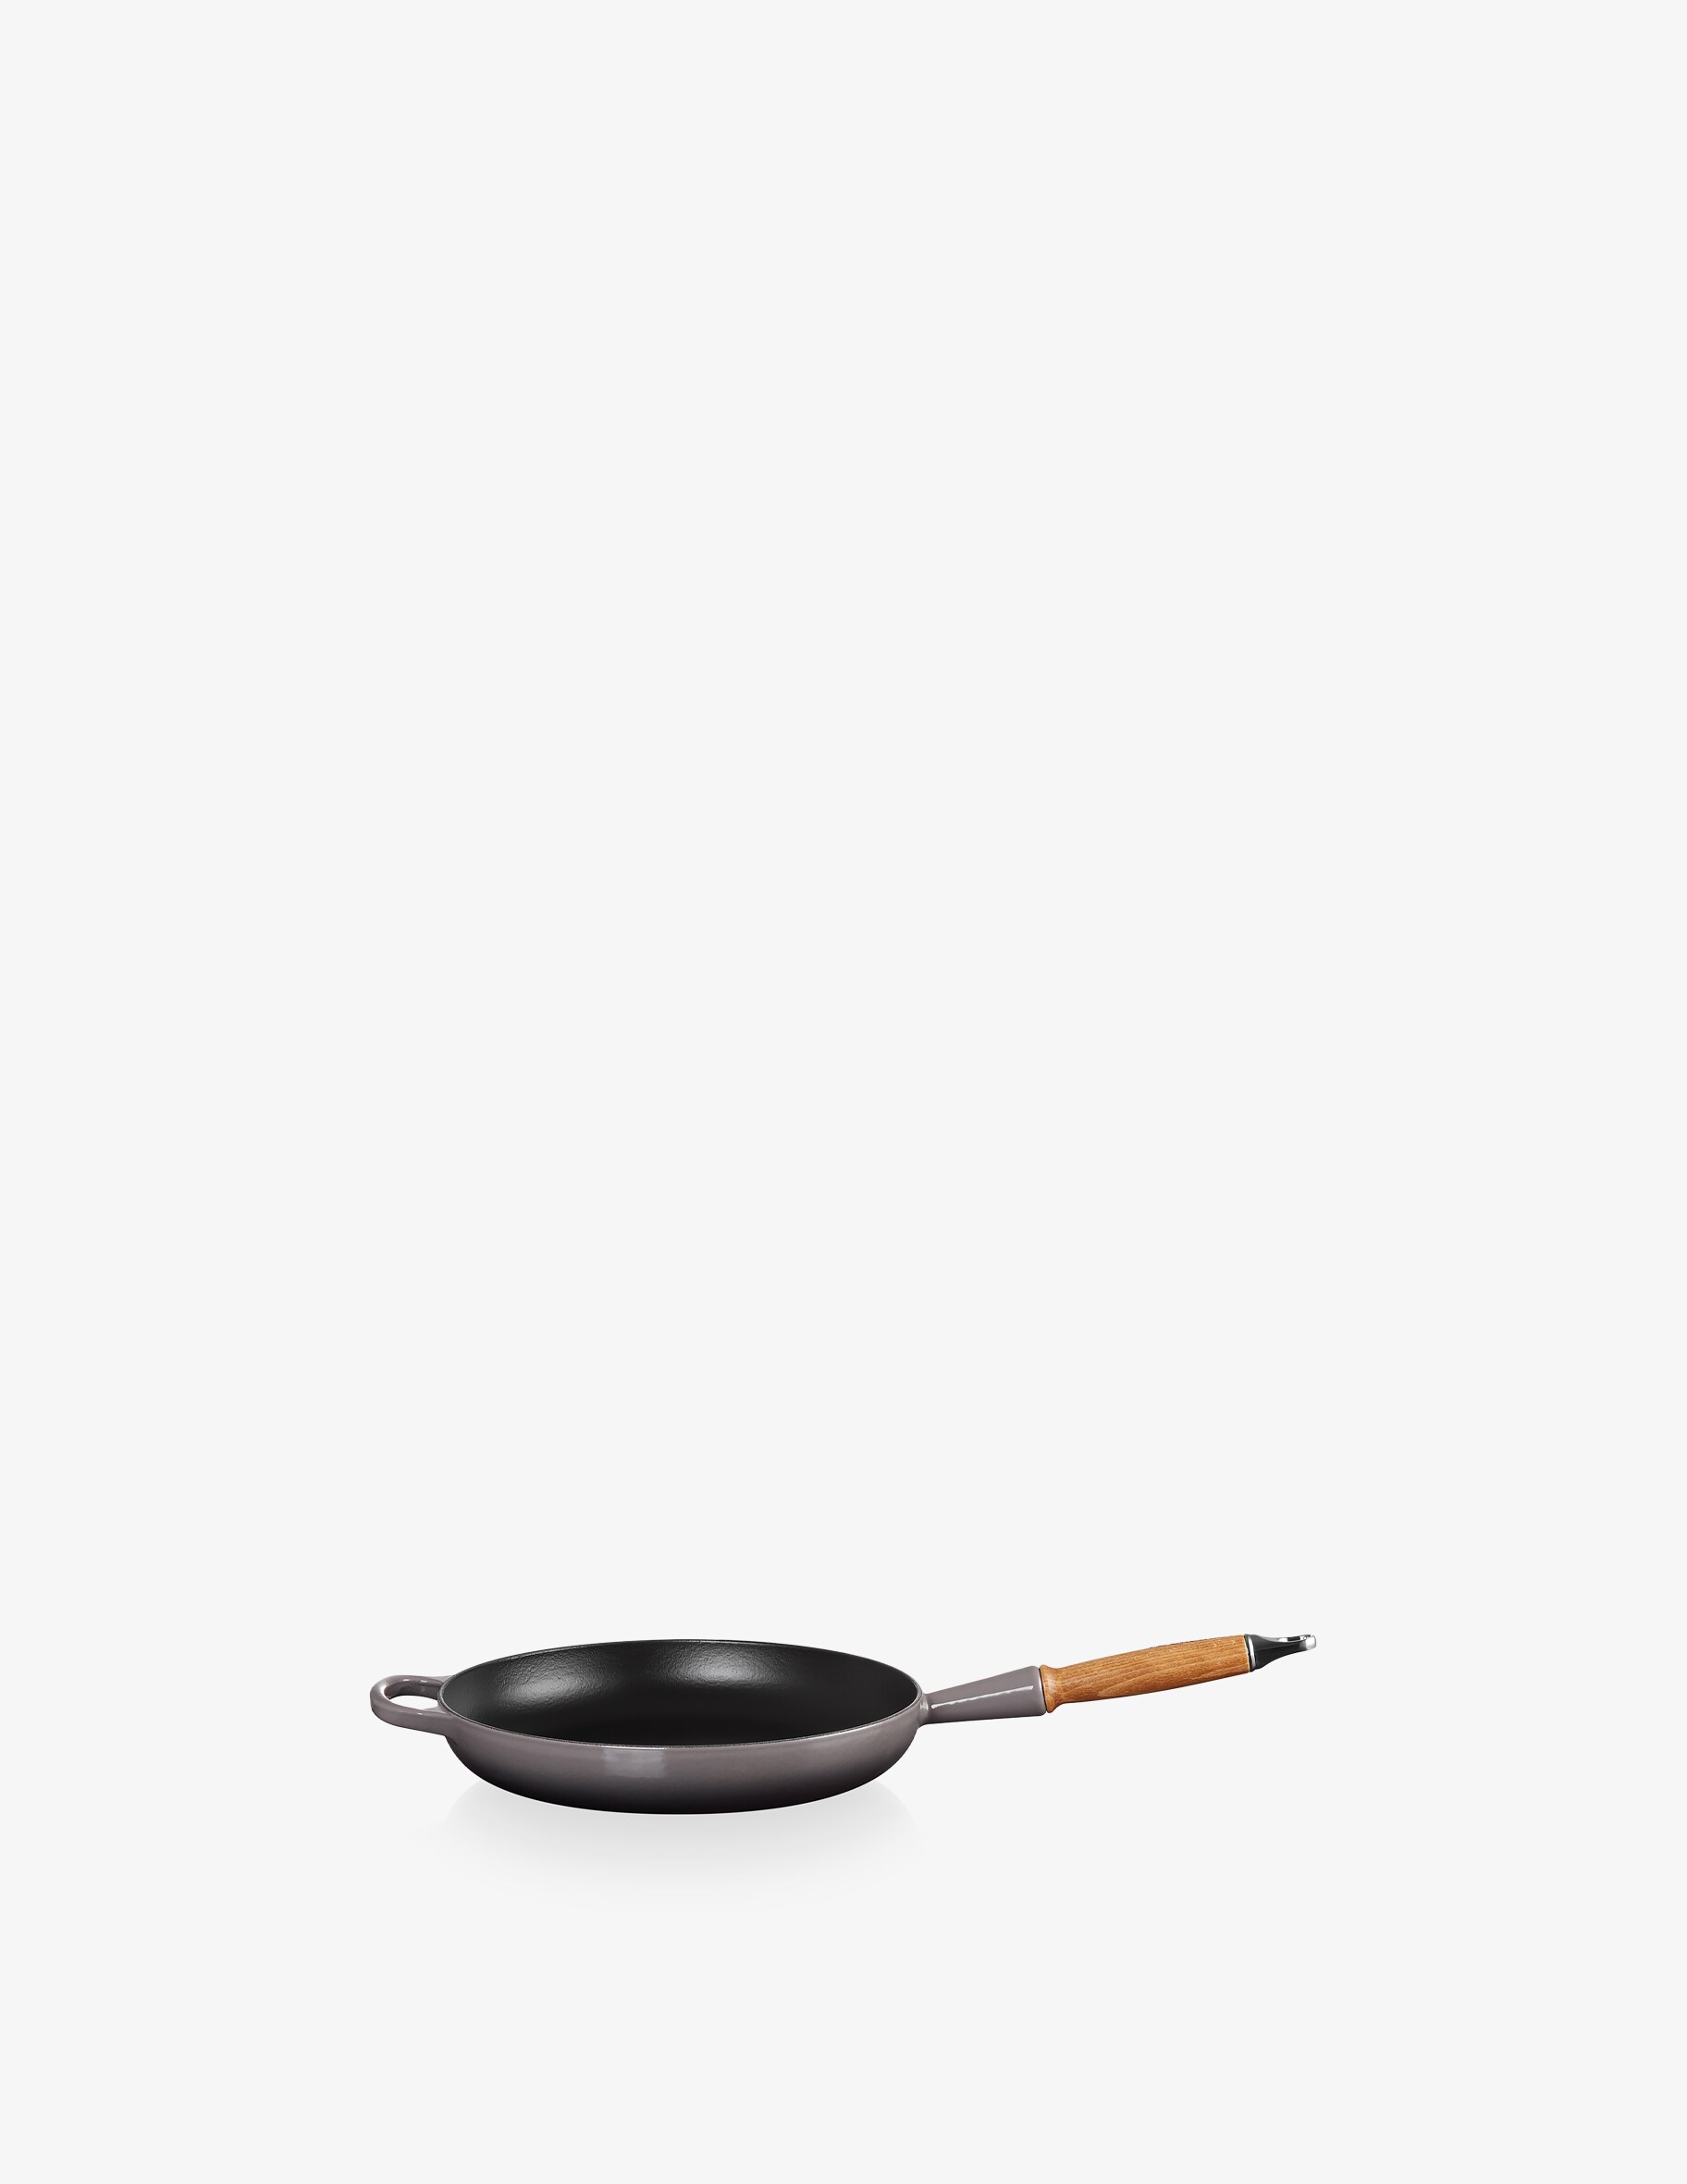 фирменная сковорода с деревянной ручкой le creuset цвет flint Фирменная сковорода с деревянной ручкой Le Creuset, цвет Flint